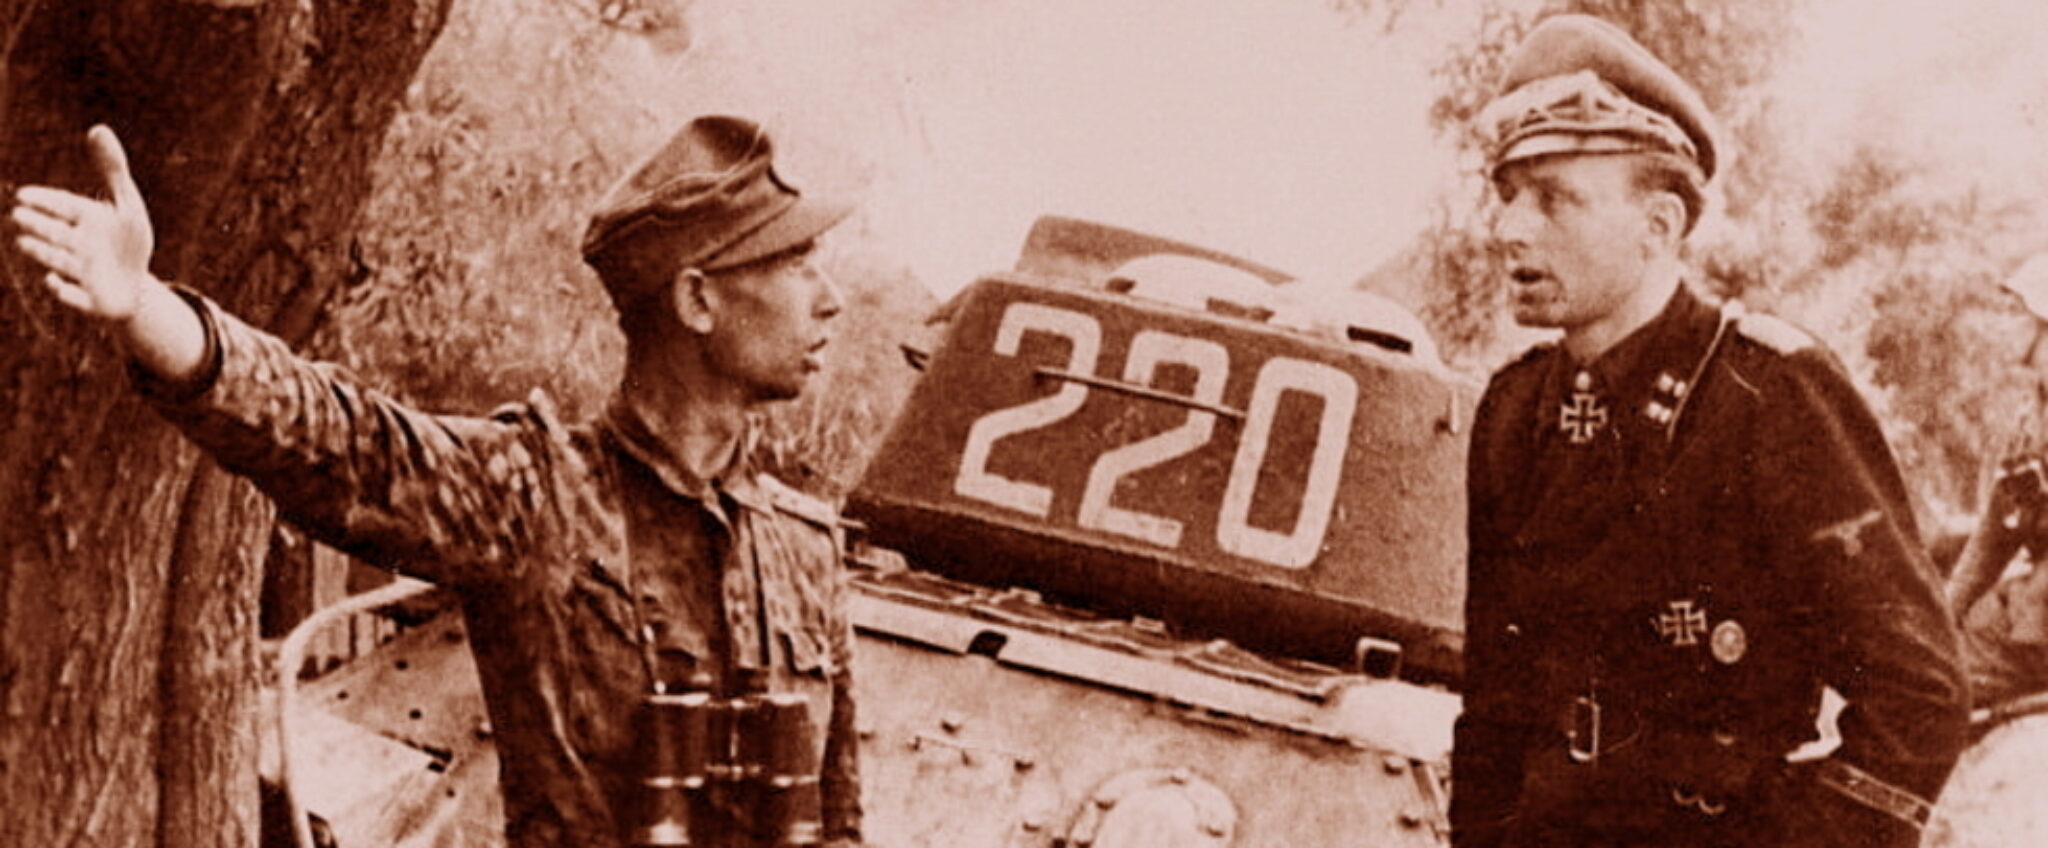 21-Я Гвардейская танковая бригада;